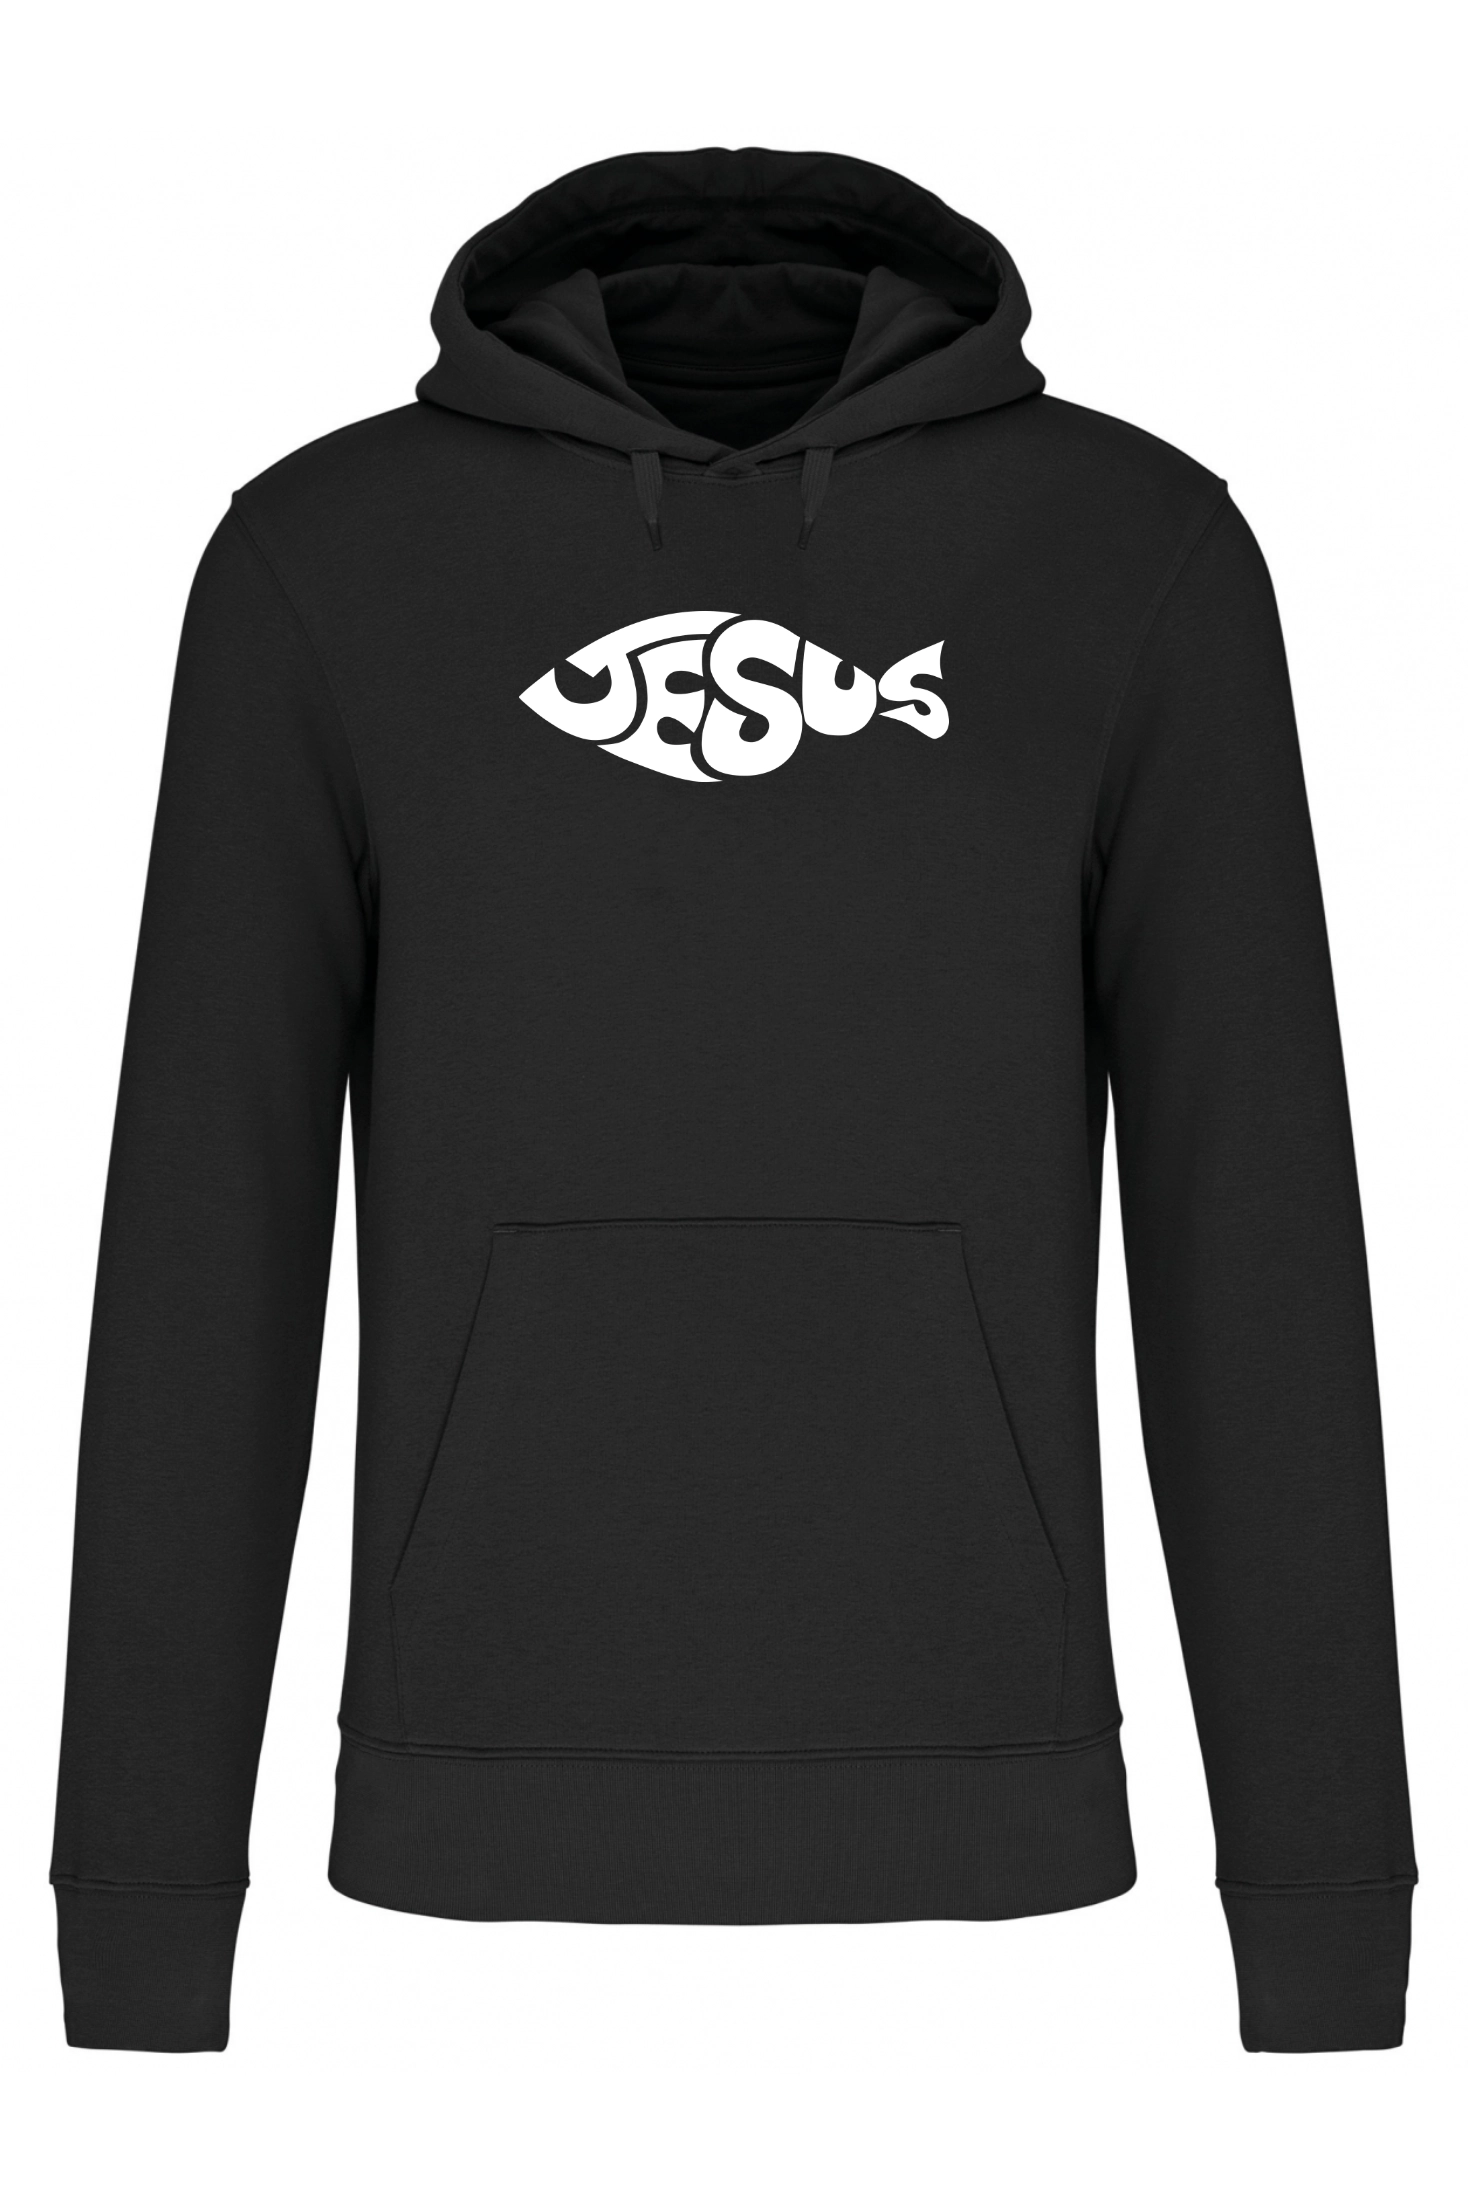 SWOTA Jesus fish kereszteny ferfi kapucnis pulover elol fekete